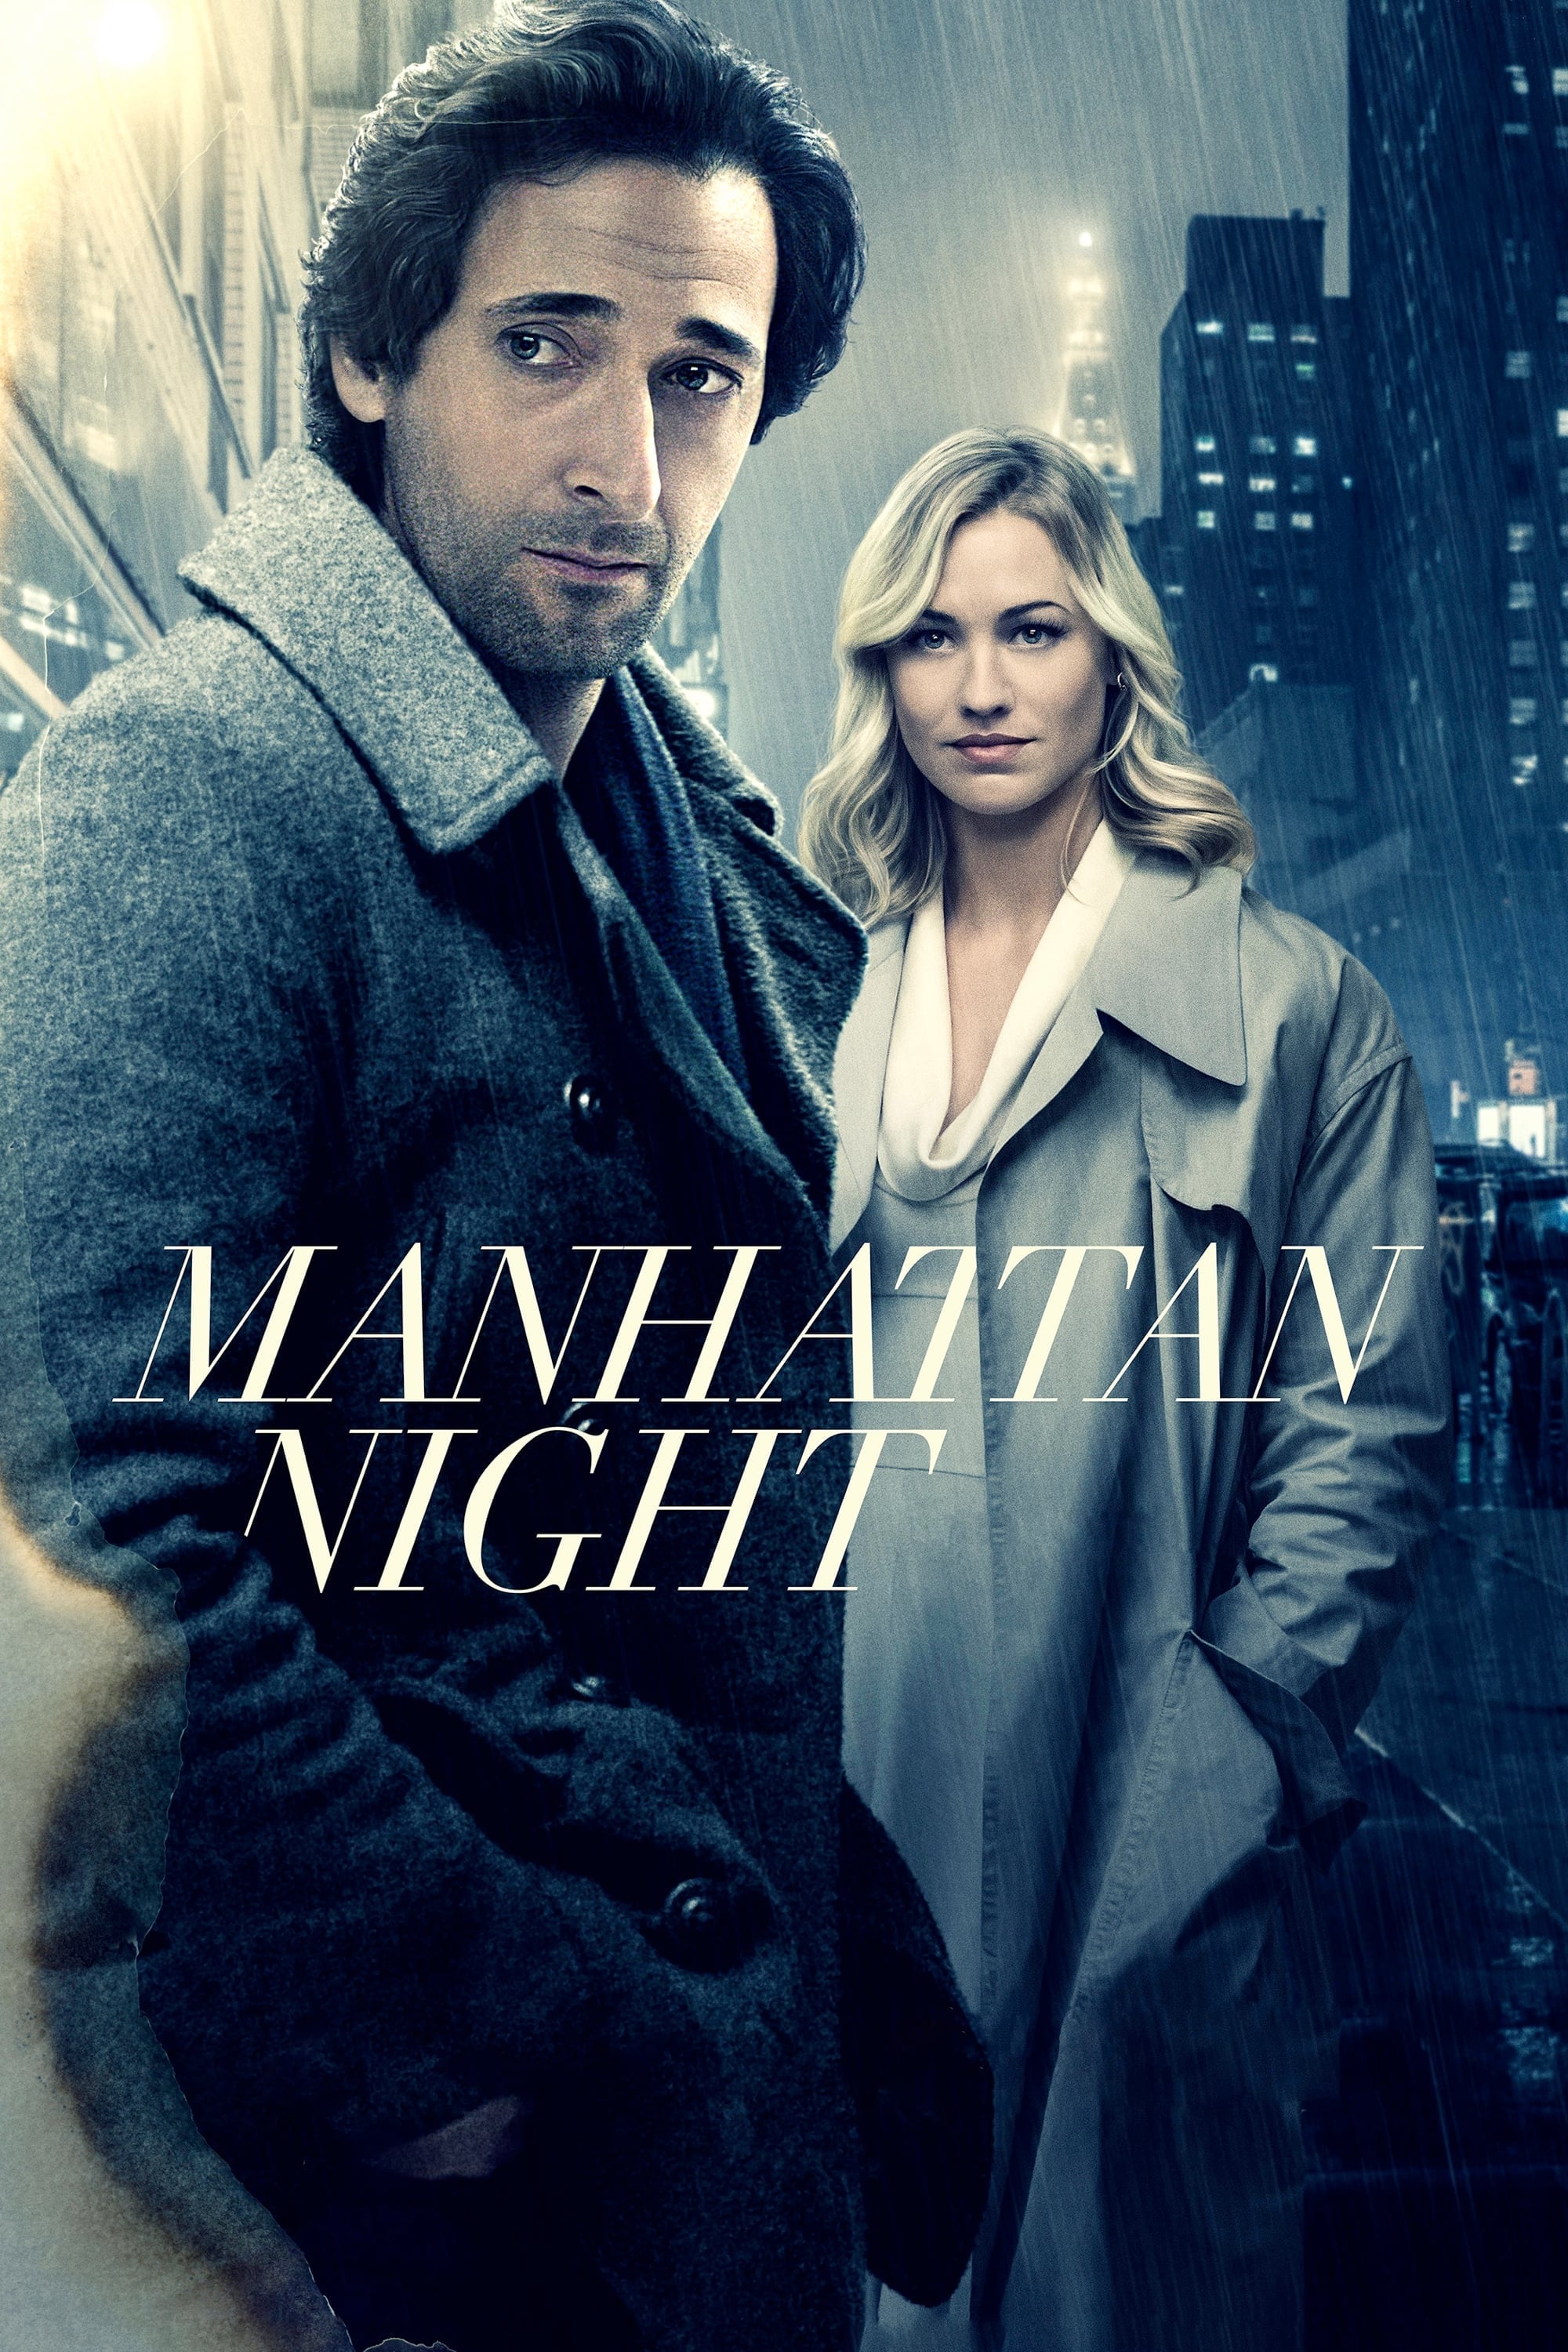 Manhattan Nocturno